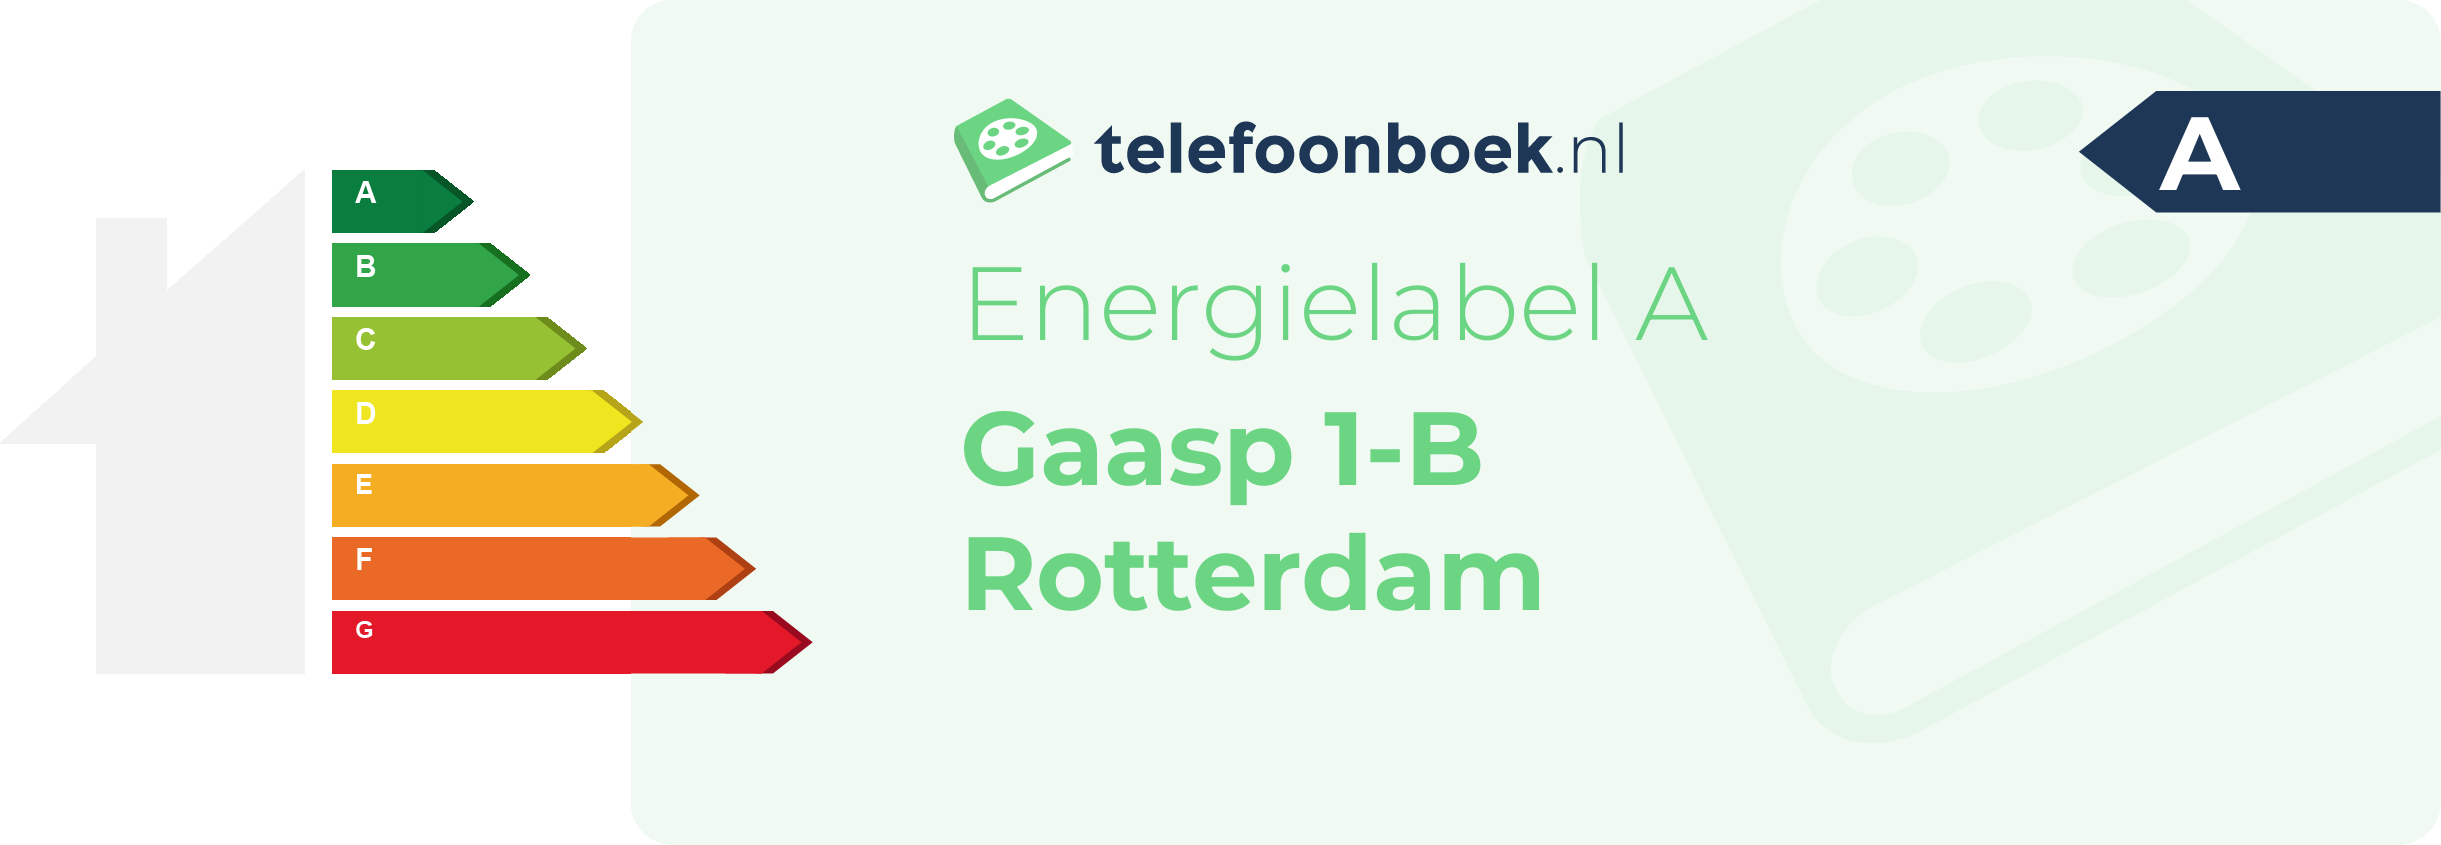 Energielabel Gaasp 1-B Rotterdam